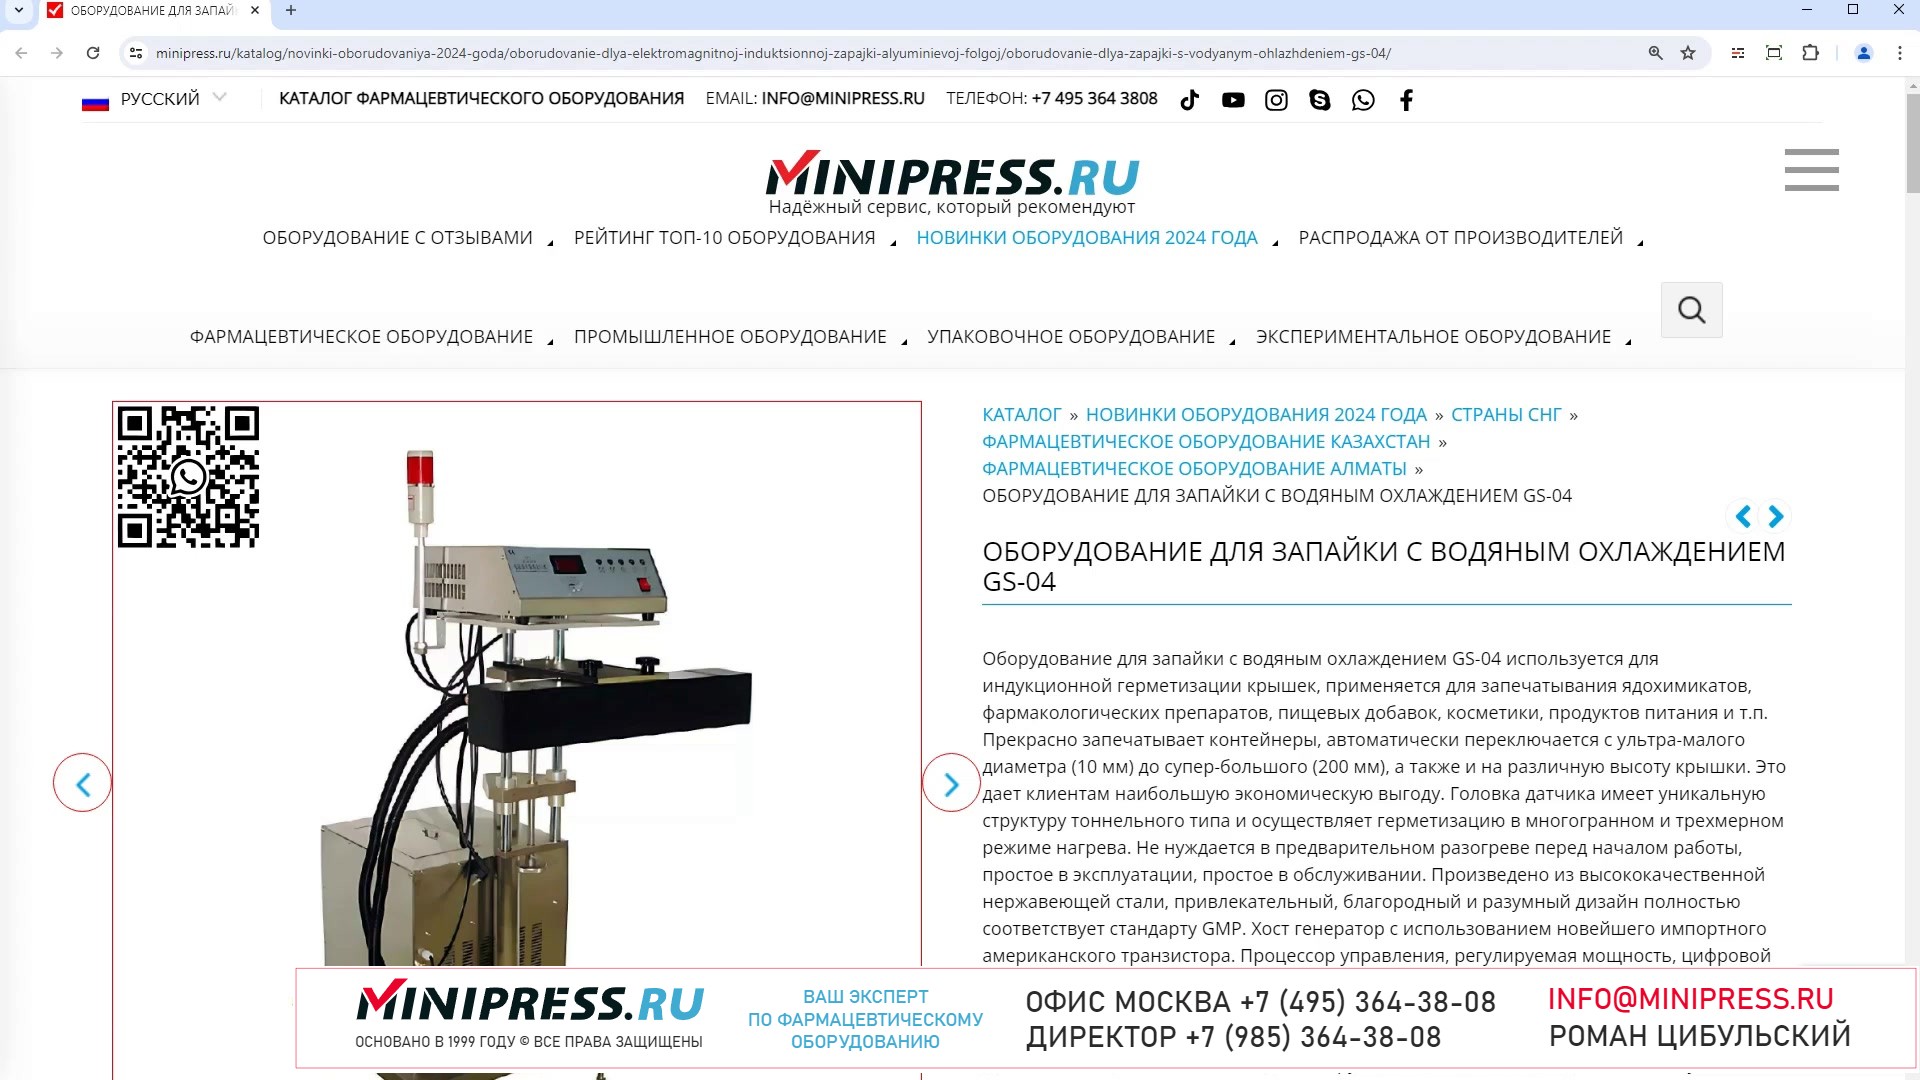 Minipress.ru Оборудование для запайки с водяным охлаждением GS-04